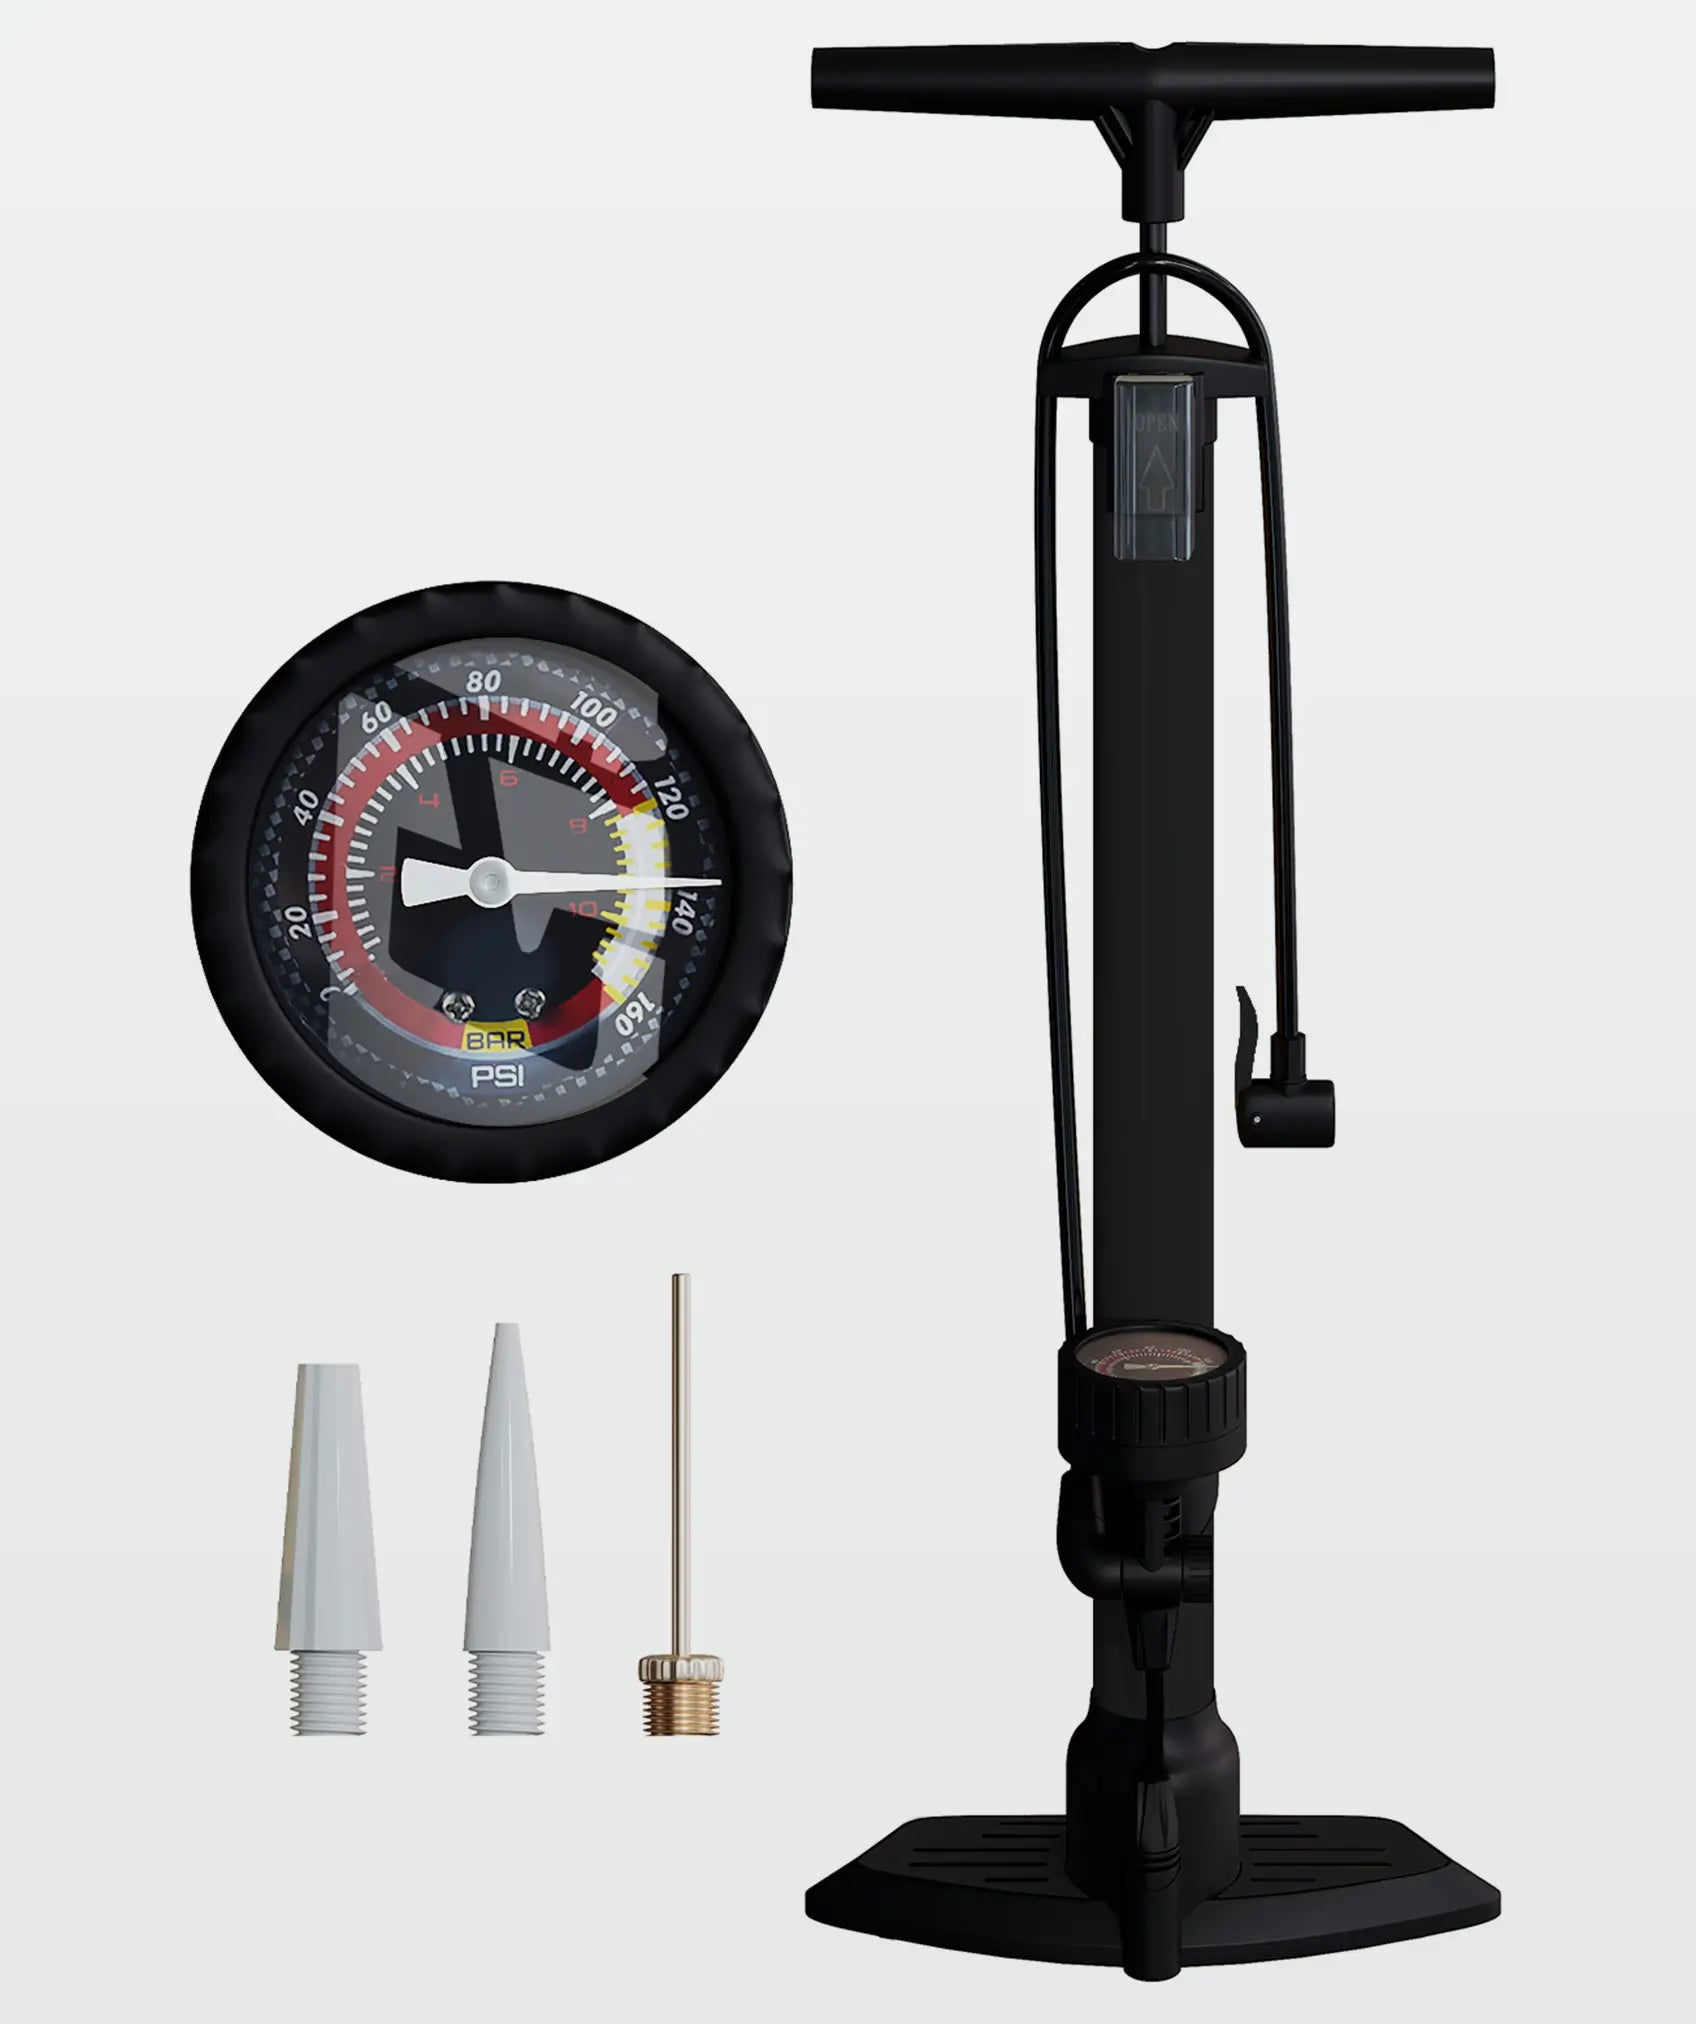 Bomba de aire de pedal multiusos, ligera y compacta: incluye manómetro